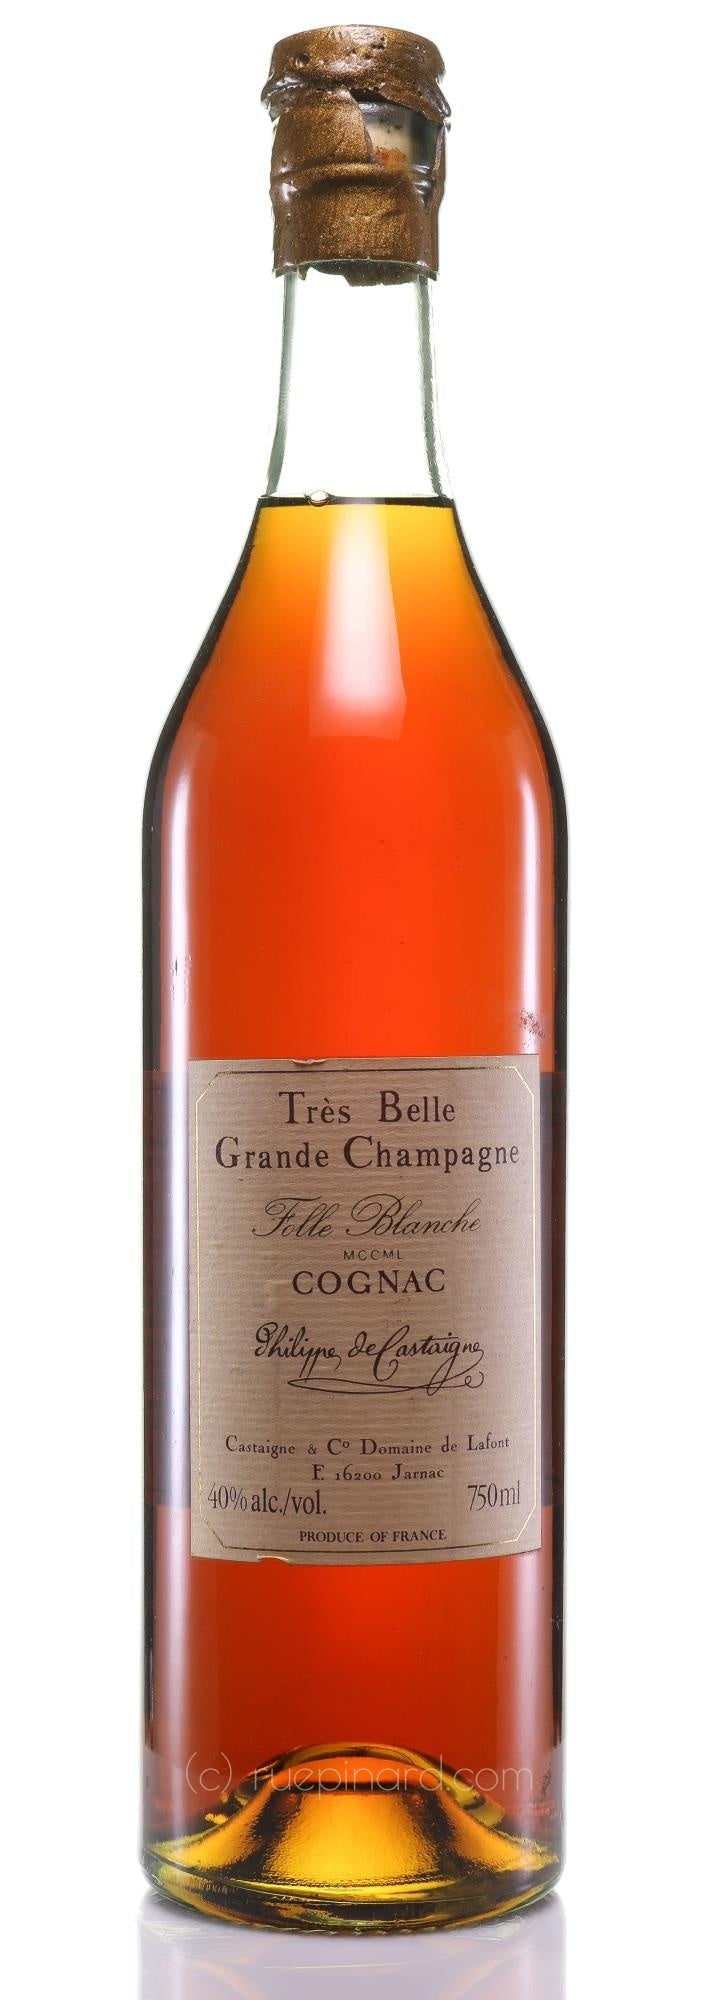 Philippe de Castaigne Tres Belle 1850 Cognac MCCML Vintage - Rue Pinard